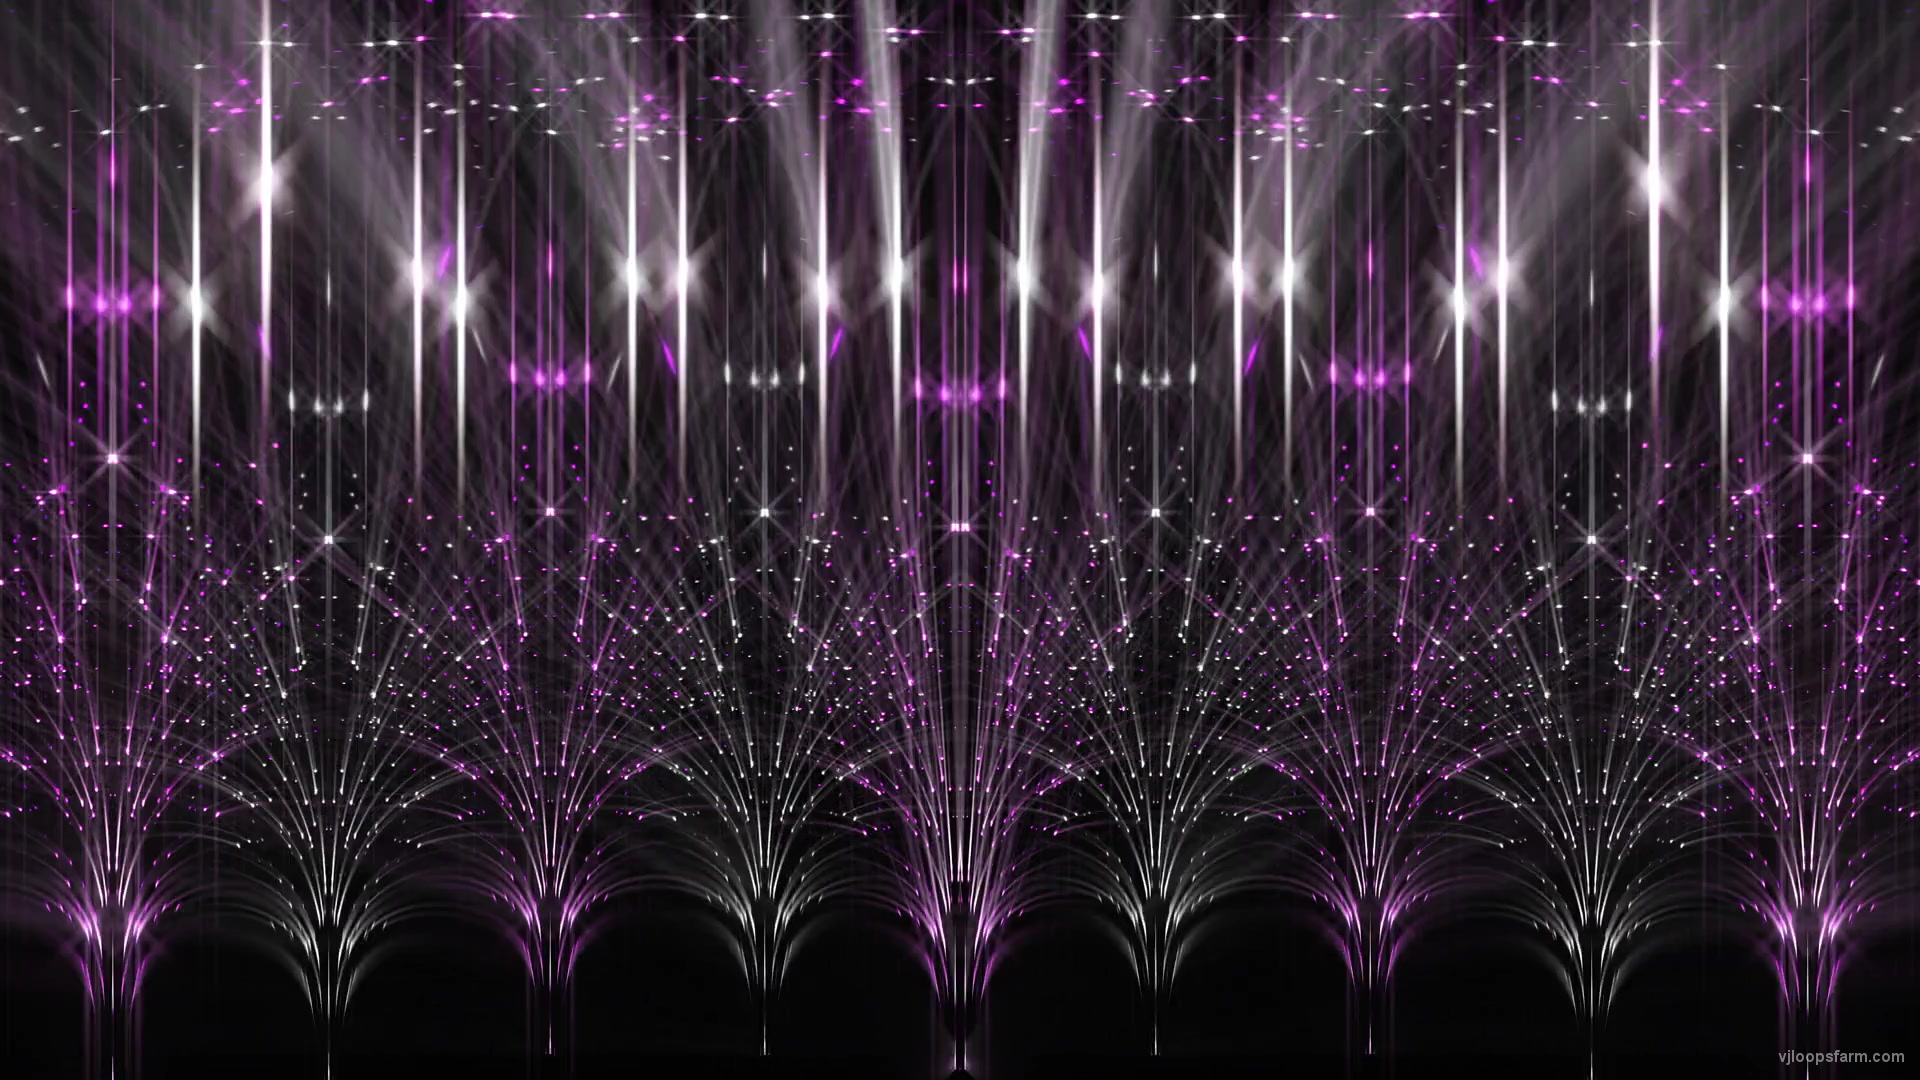 Triumph-Stage-Screens-Pink-Pattern-Rays-LIghts-Video-Art-UltraHD-VJ-Loop-X3-p7jxwy-1920_005 VJ Loops Farm